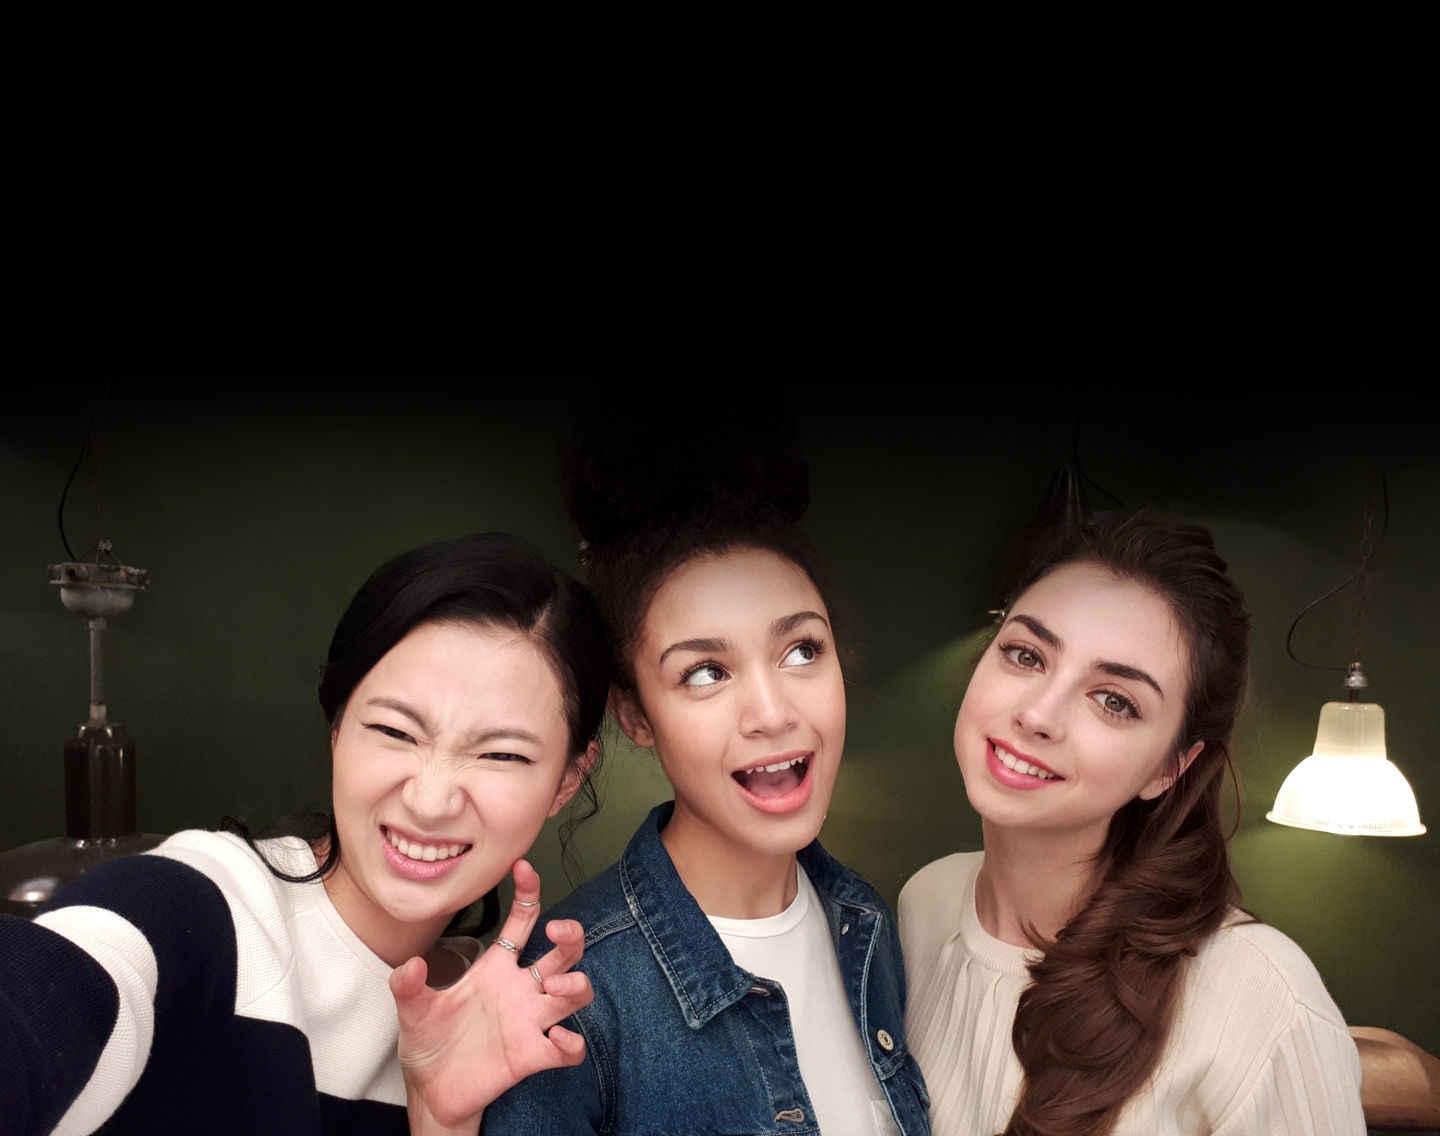 Селфі-фото трьох жінок, зроблене в умовах недостатньої освітленості, щоб показати розширені функціональні можливості камери Galaxy A7 (2017).